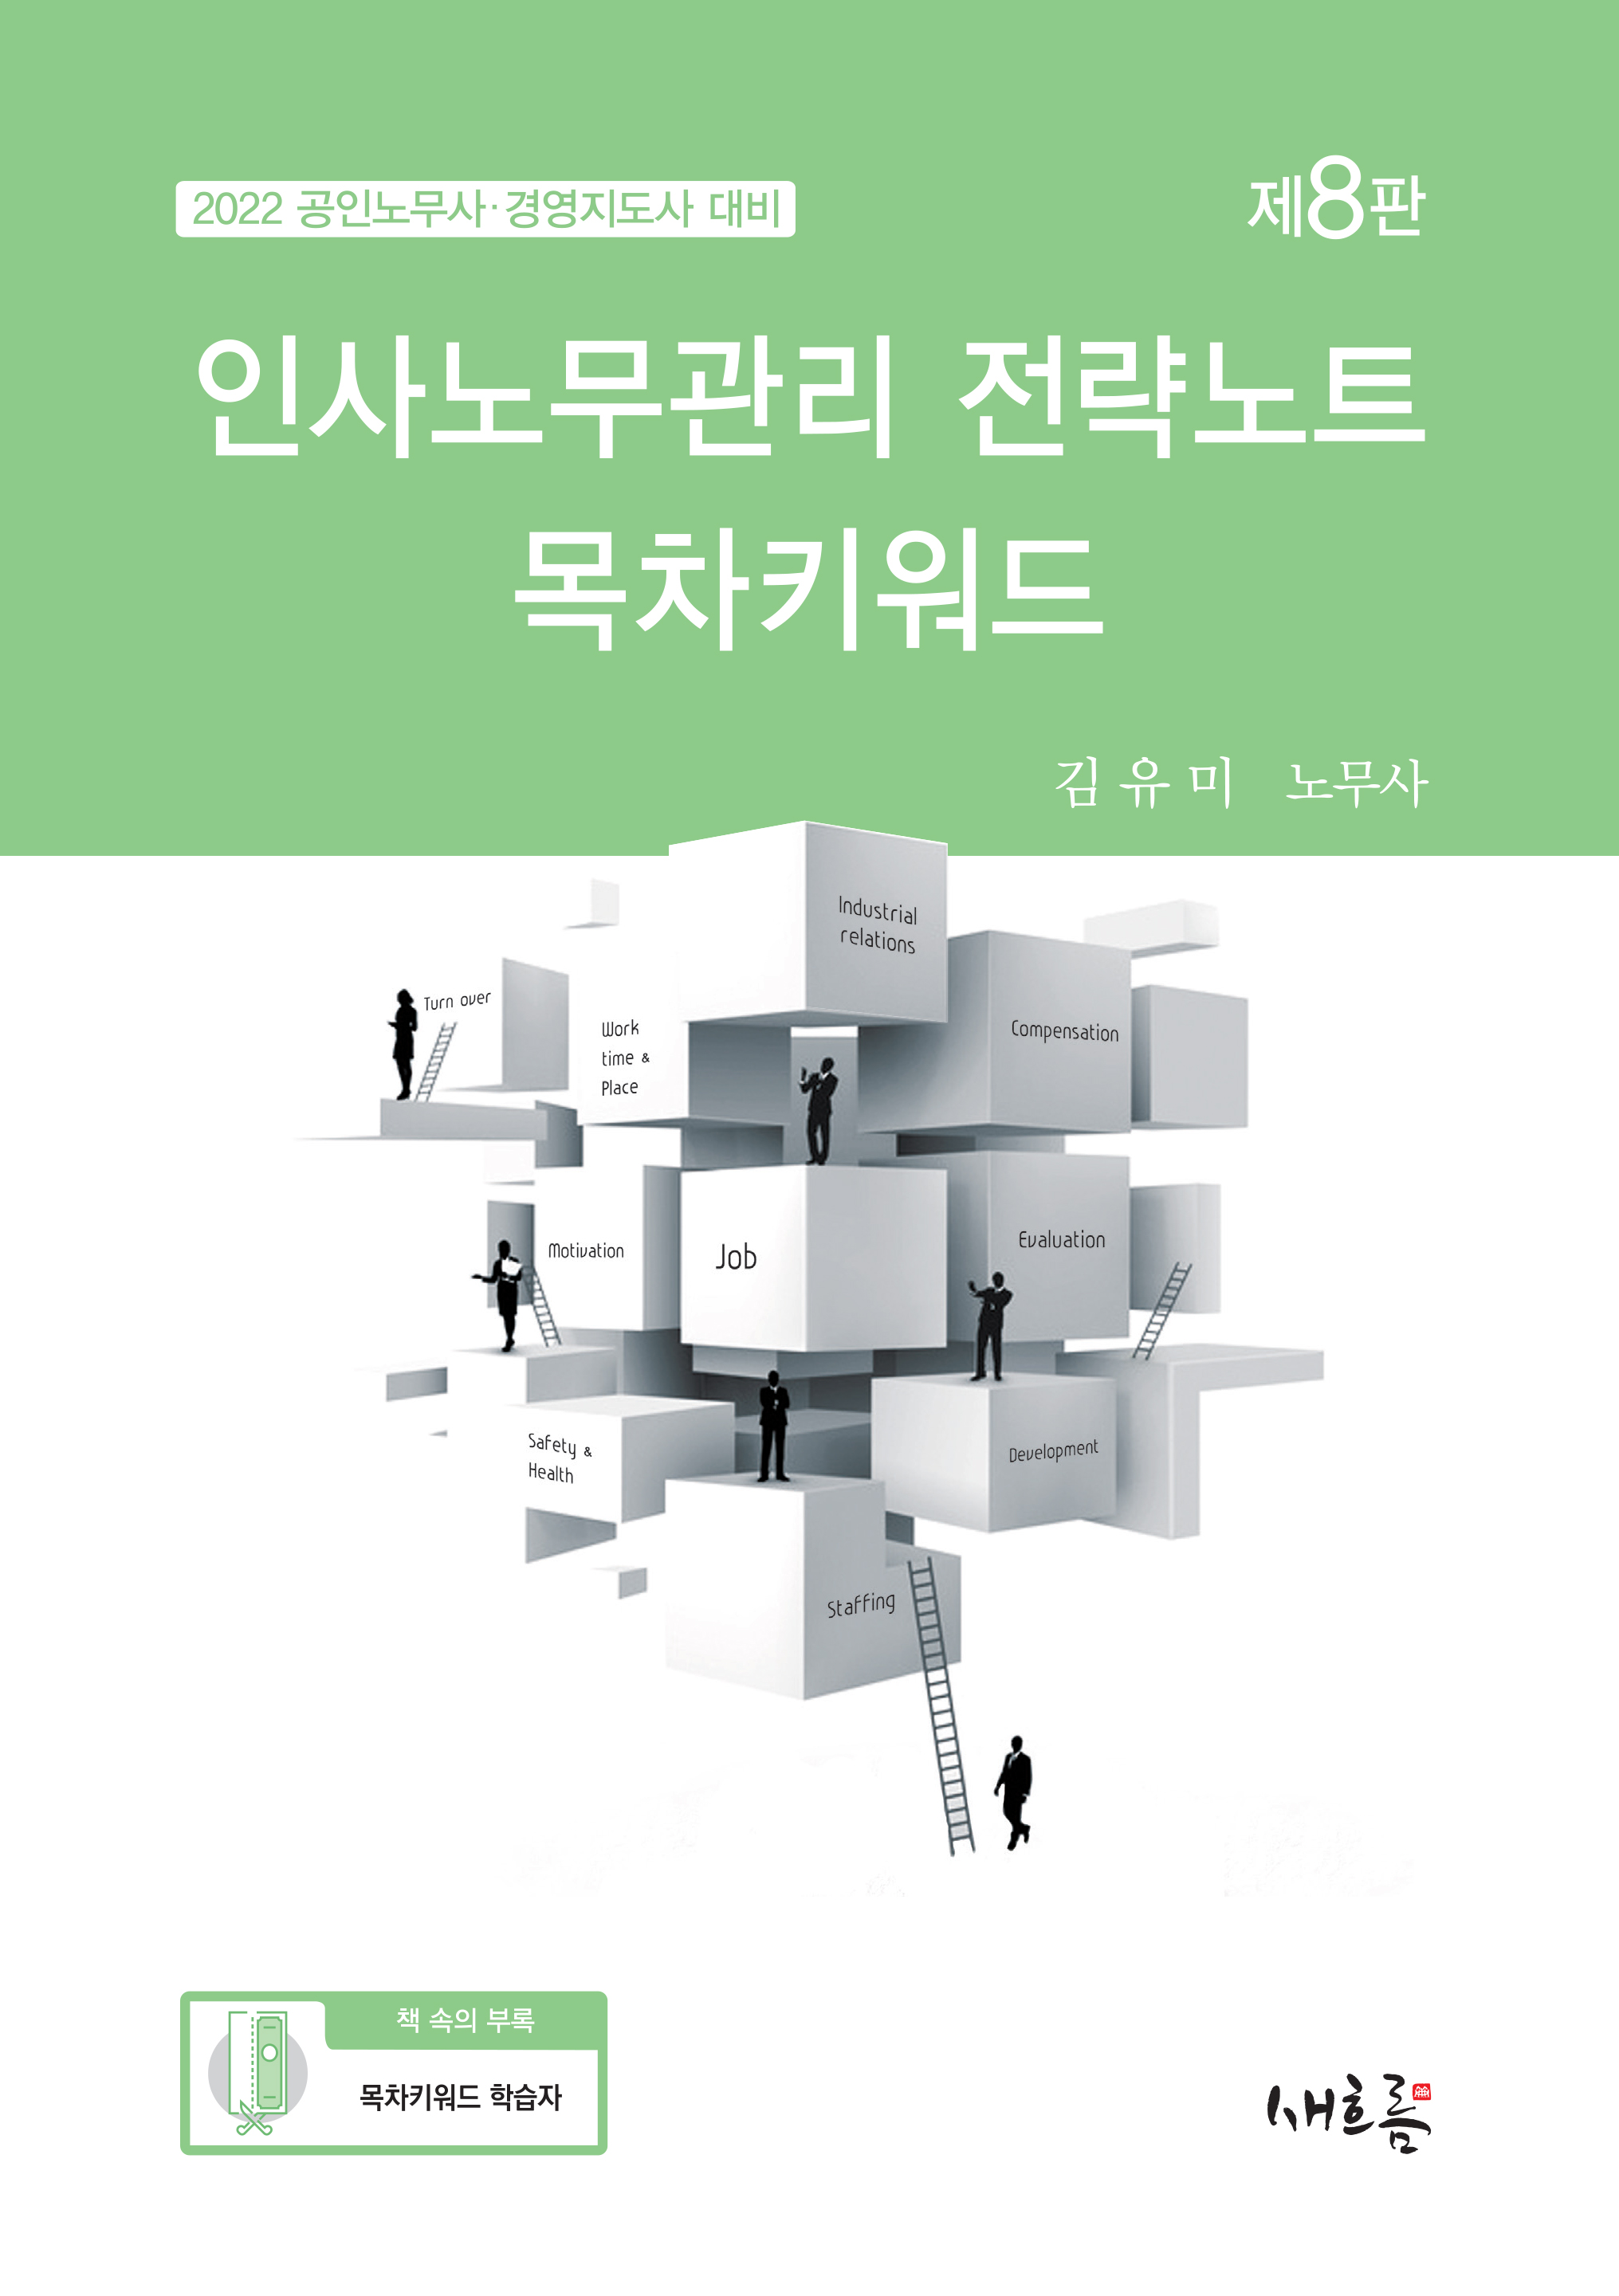 김유미 인사노무관리 전략노트 목차키워드 (8판) 책 표지